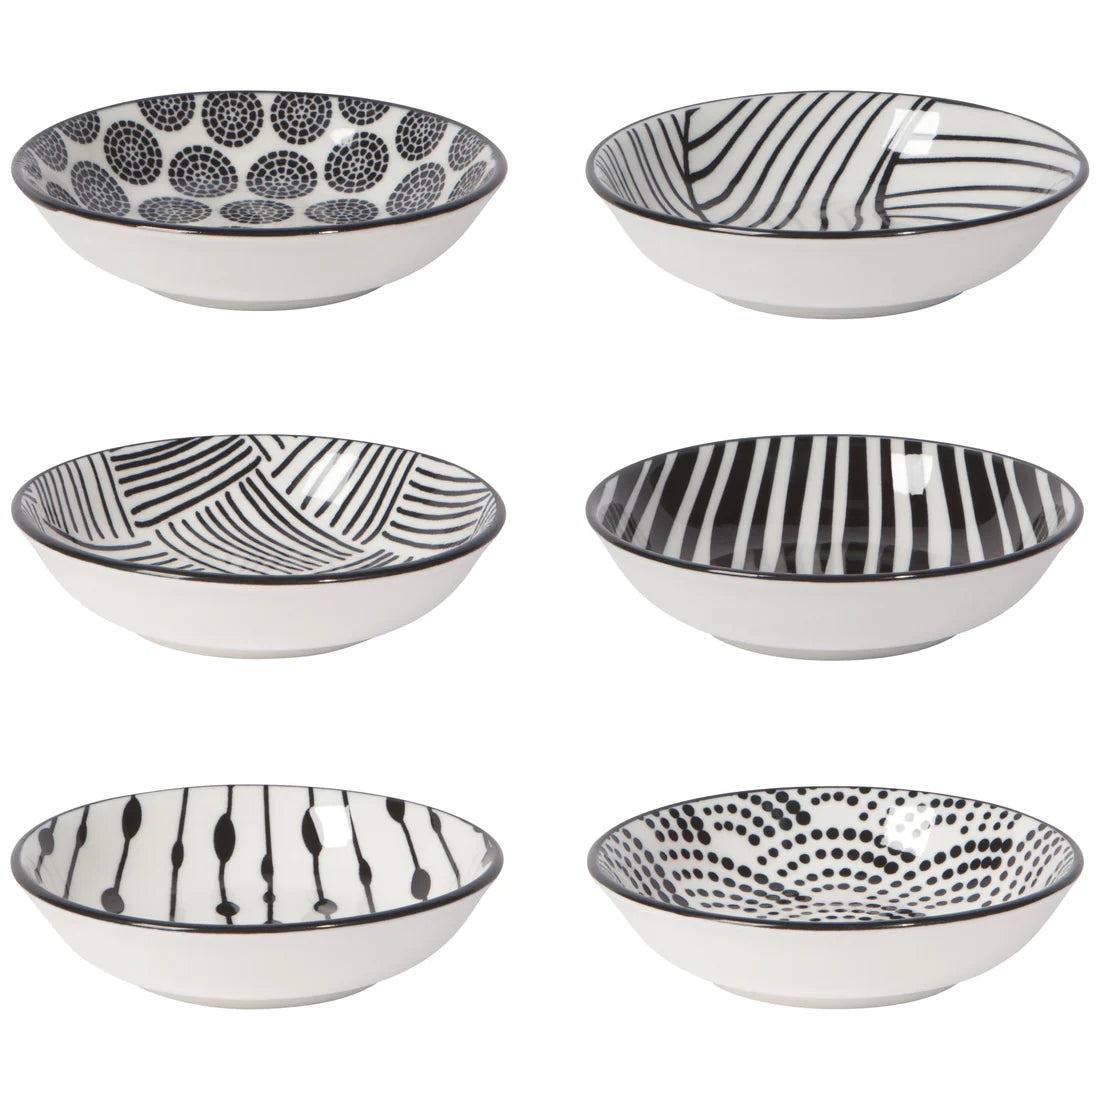 Bits & Dots Pinch Bowl Set of 6 - Black & White